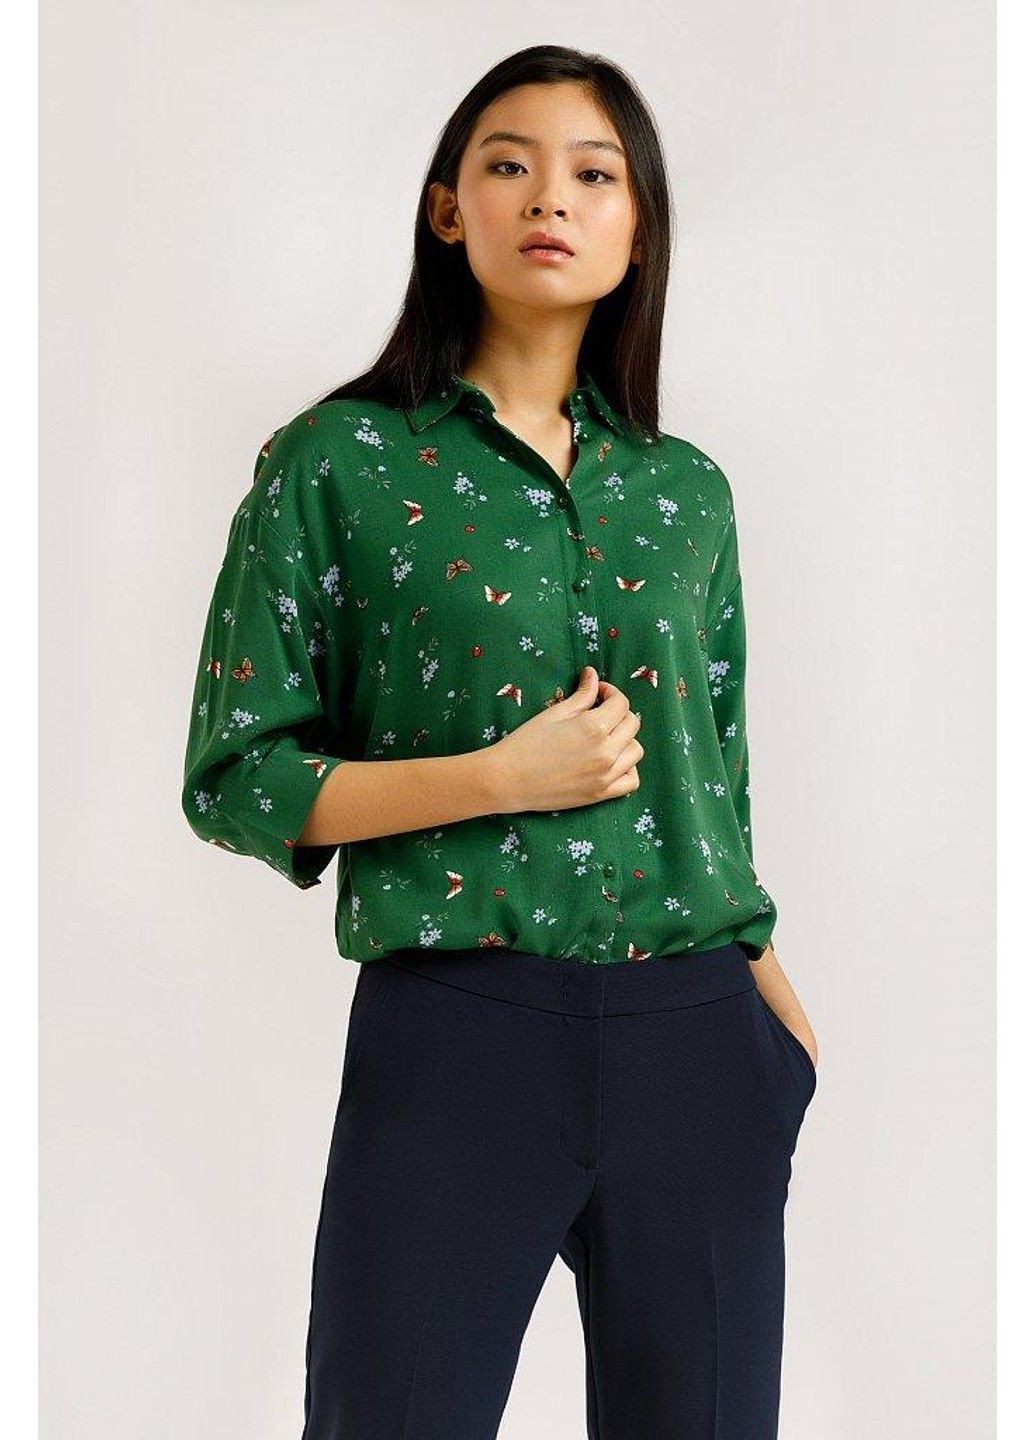 Зелёная блузка b20-12054-500 Finn Flare